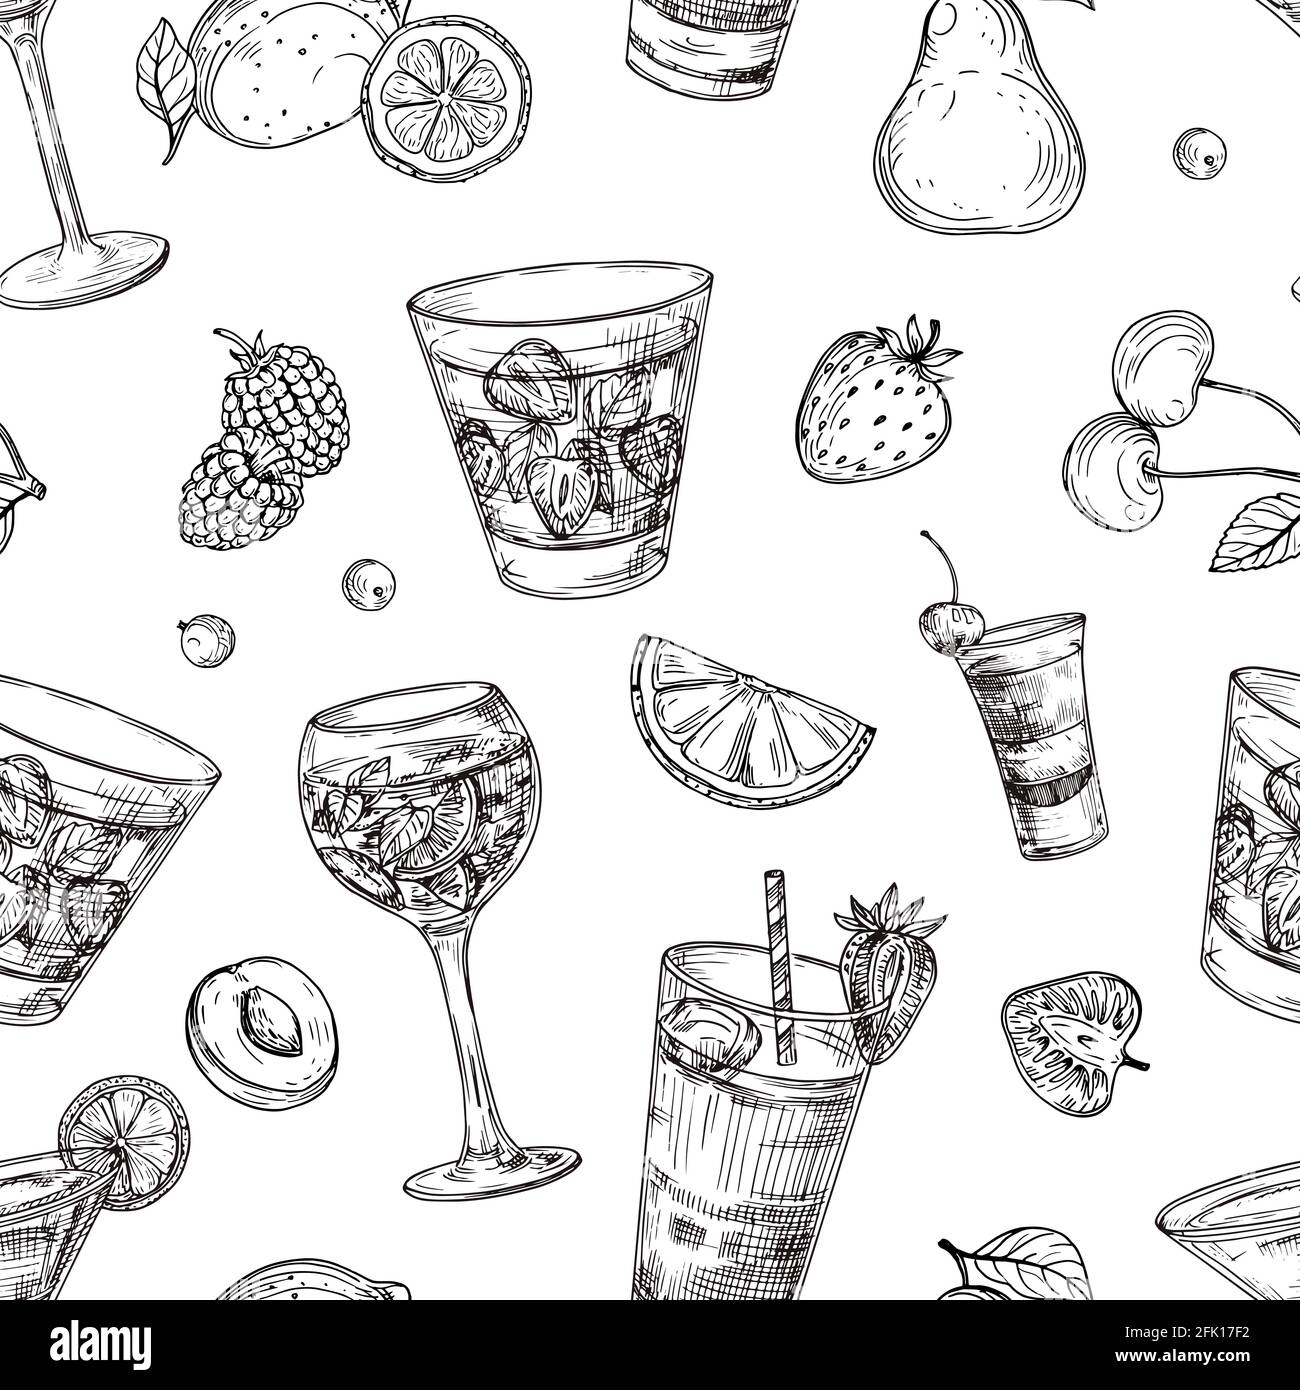 Mẫu hoa văn cocktail mang đến một phong cách hoàn toàn mới cho các loại đồ uống cocktail của bạn. Bạn sẽ được khám phá những hoa văn tinh tế và đường nét mượt mà, giúp giảm thiểu thời gian thiết kế và tăng tính thẩm mỹ cho toàn bộ thiết kế của mình.